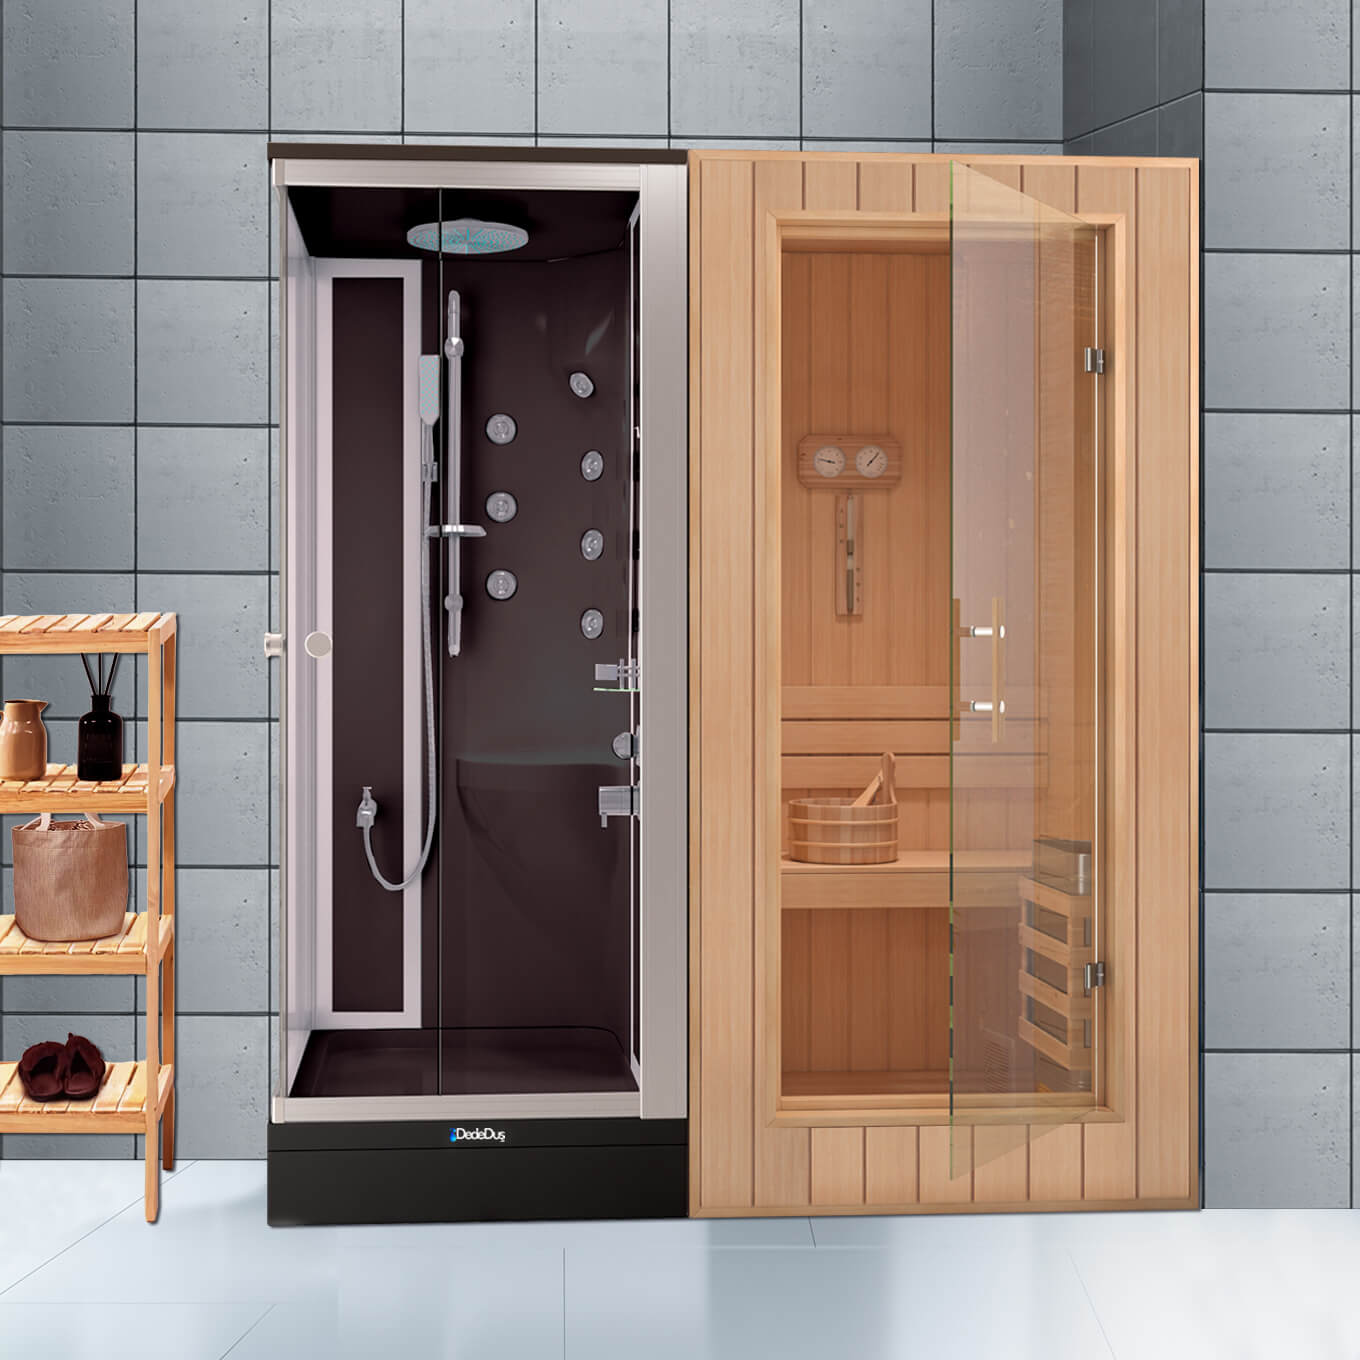 Siyah dikdörtgen duş teknesi üzeri kompakt duşakabin ve sauna odası, Dede Duş, Çengelköy, Çekmeköy, Şile